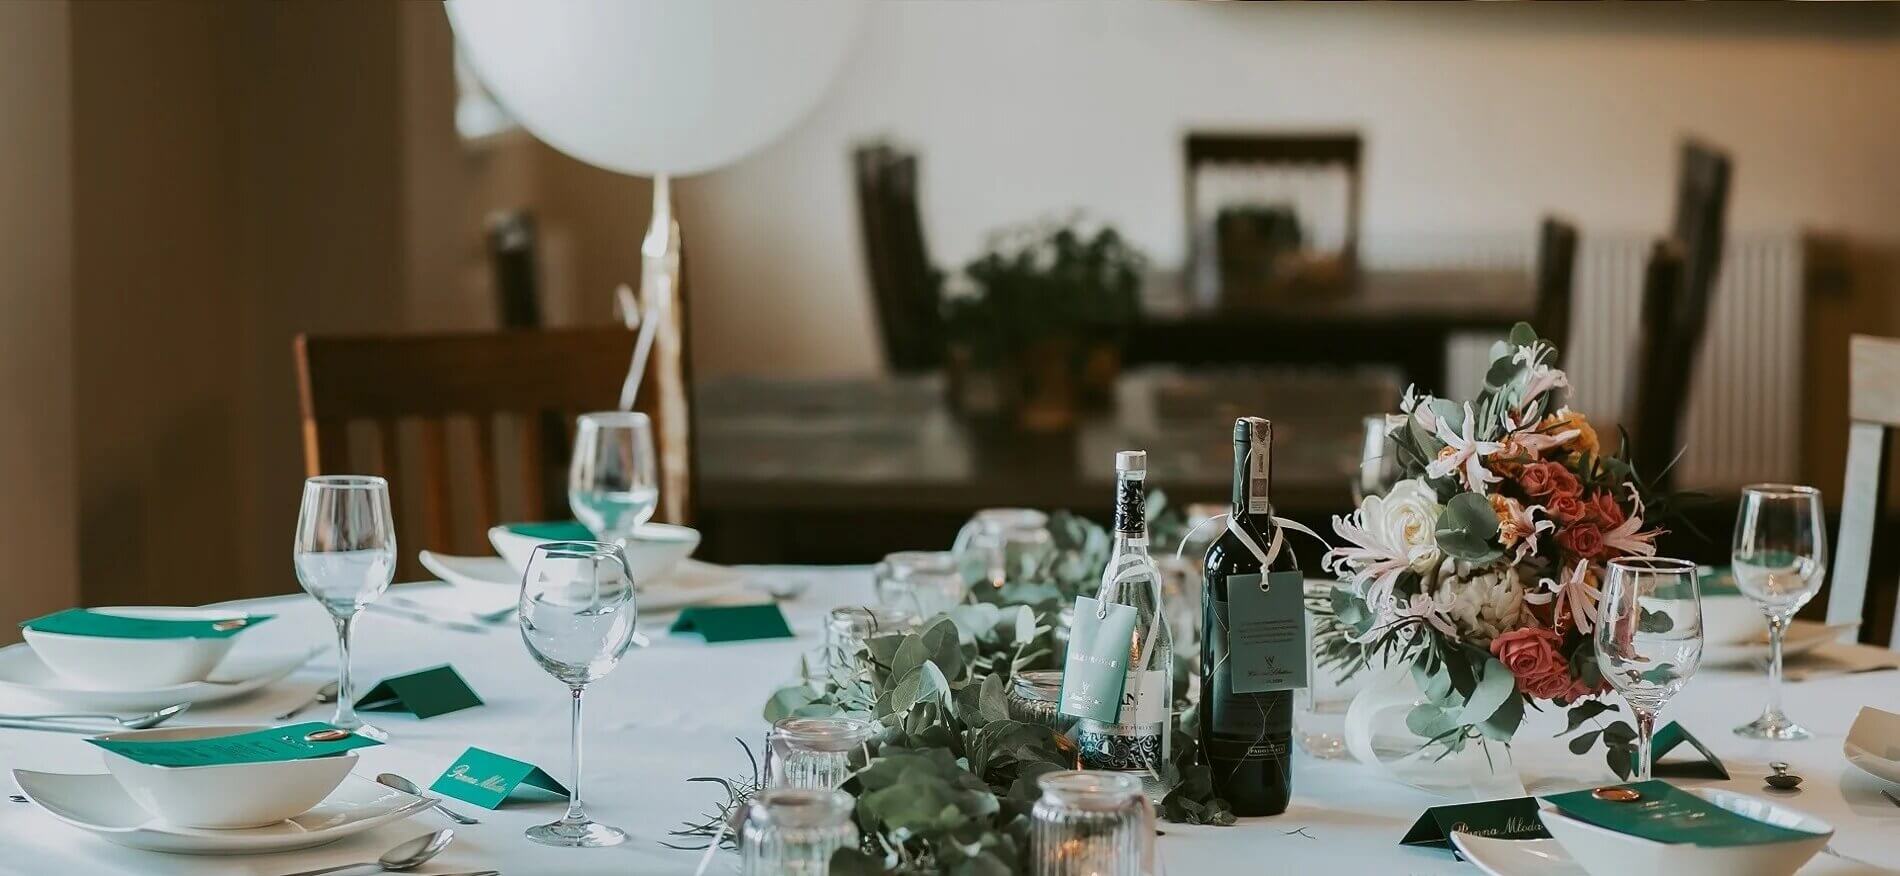 Butelka wina stojąca na stole podczas kolacji romantycznej dla gości restauracji z bukietem kwiatów i zstawą